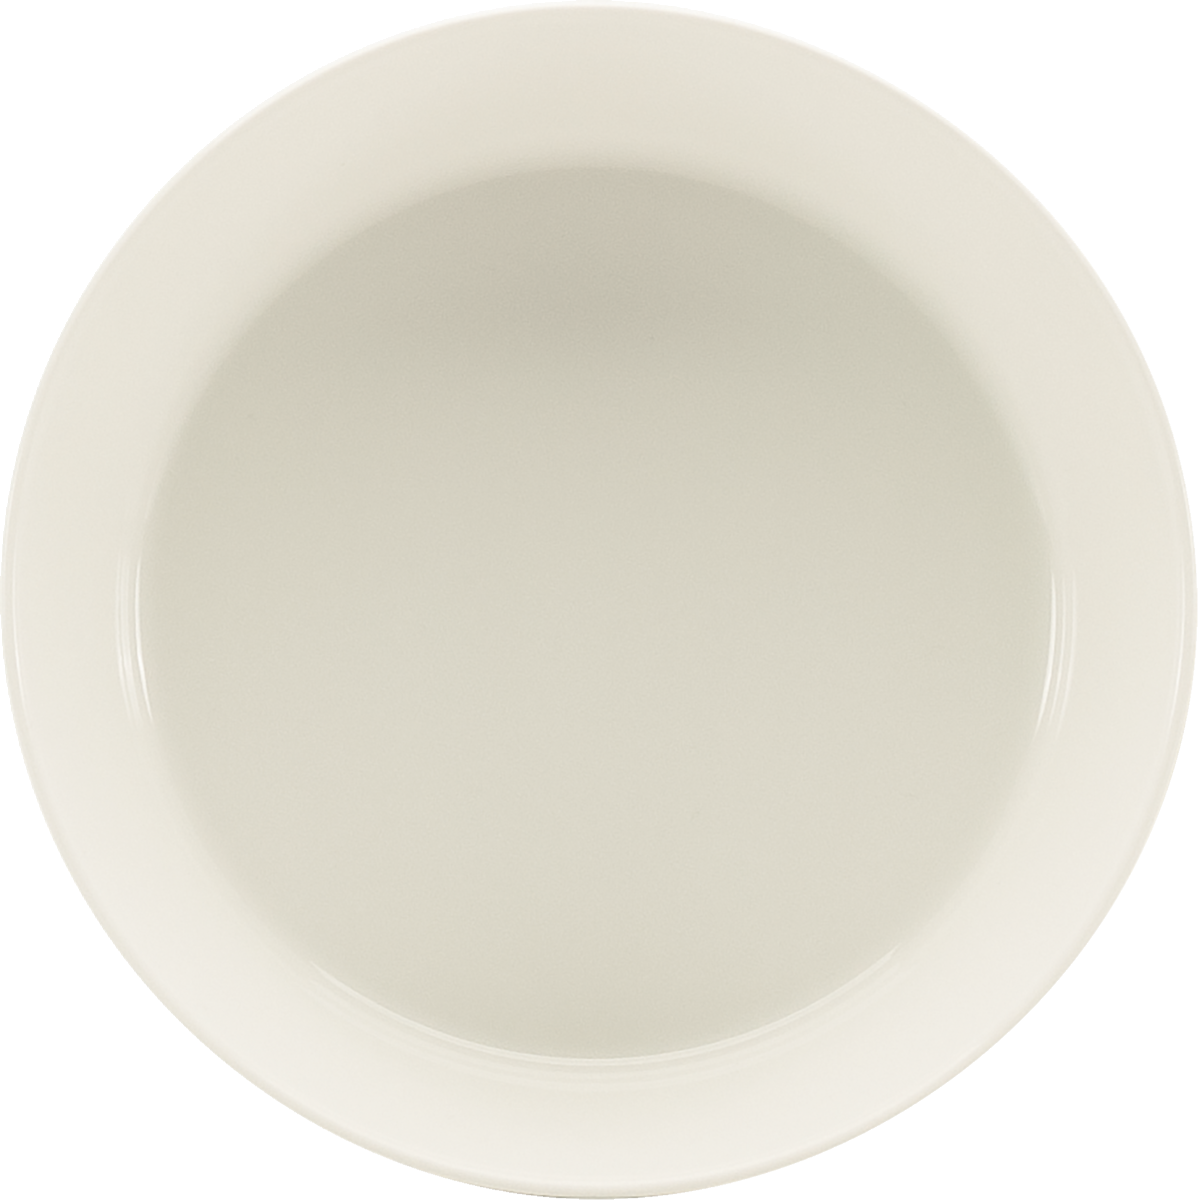 Dish round 16cm/0.75l